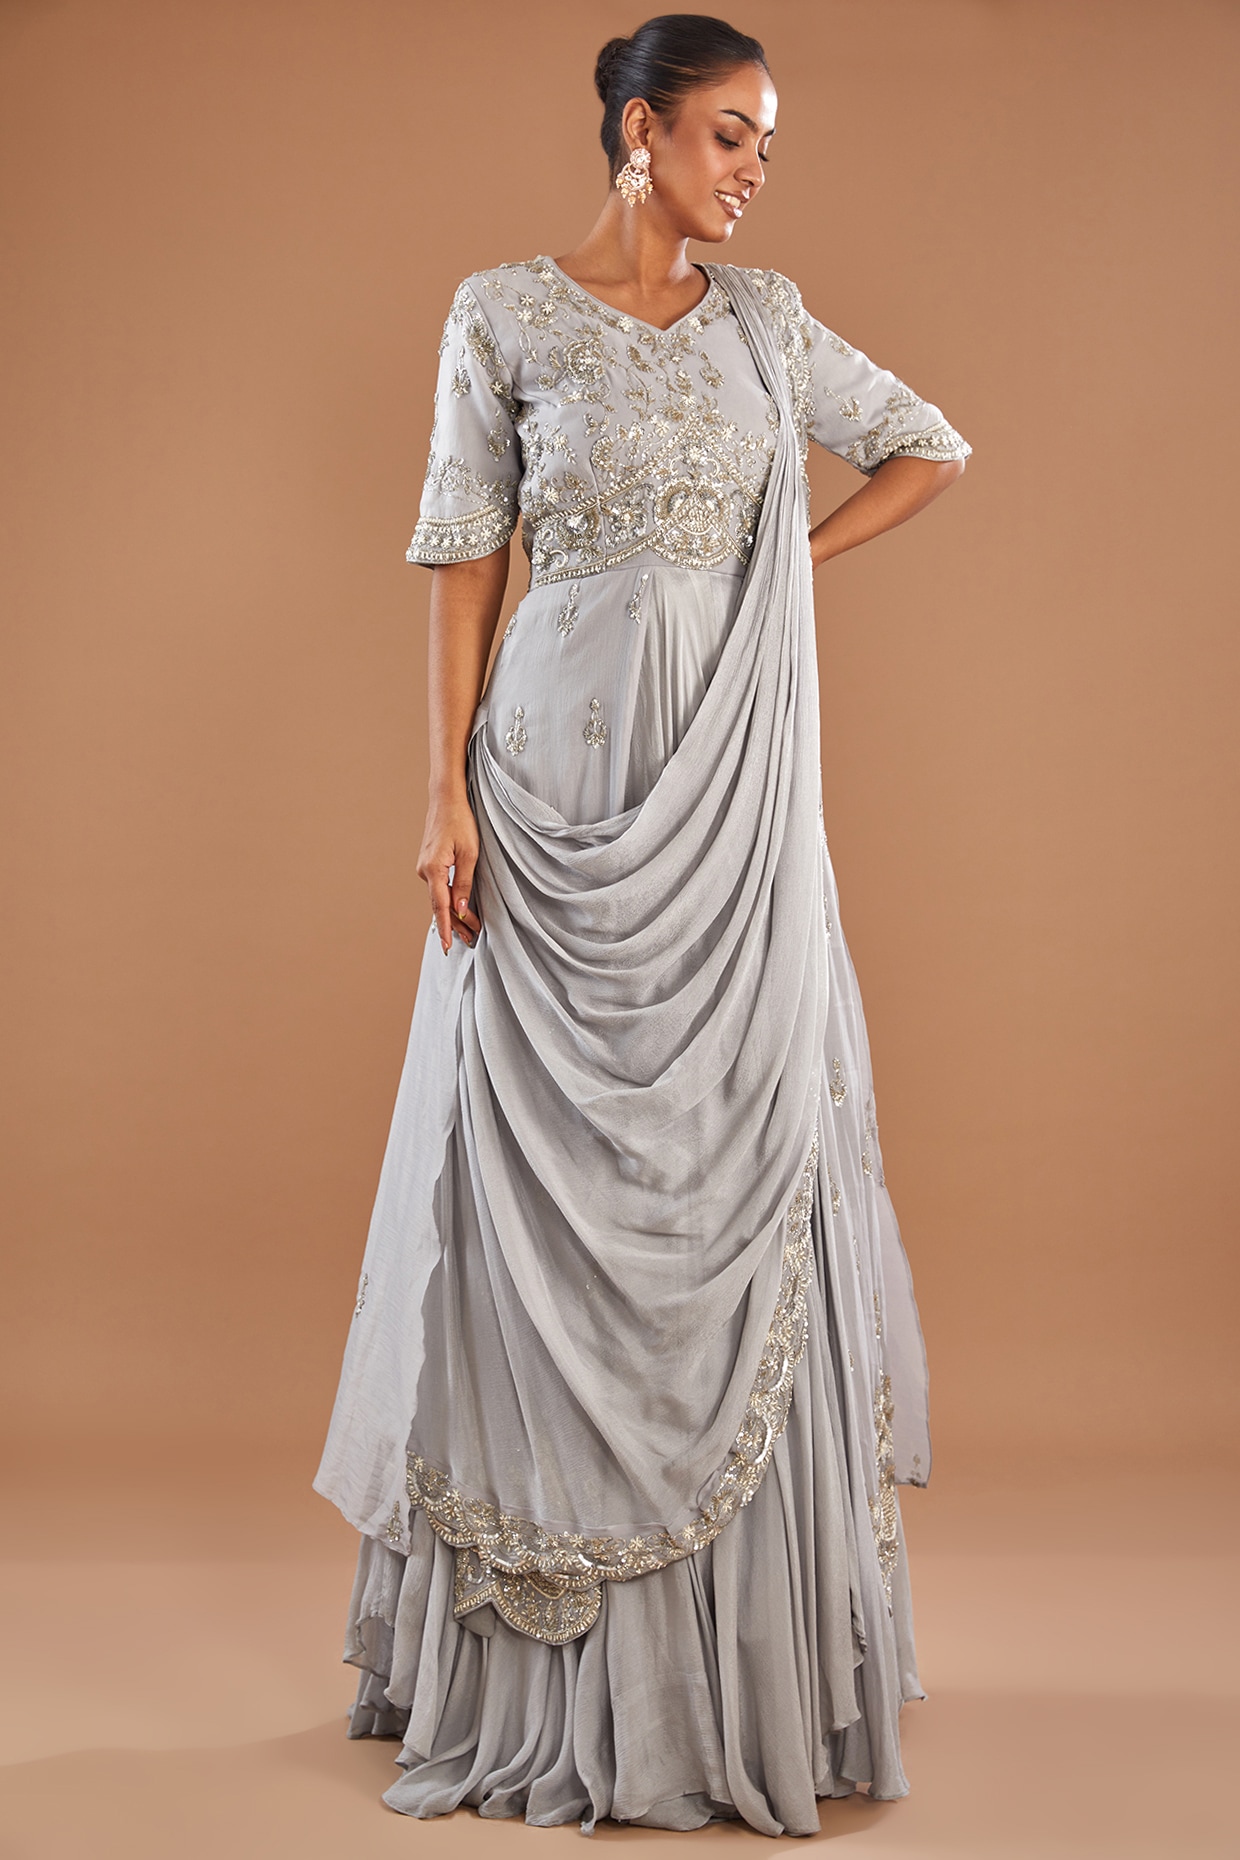 Ethnic Gowns - Bangalore Designer Boutique | Best Boutique Near Me